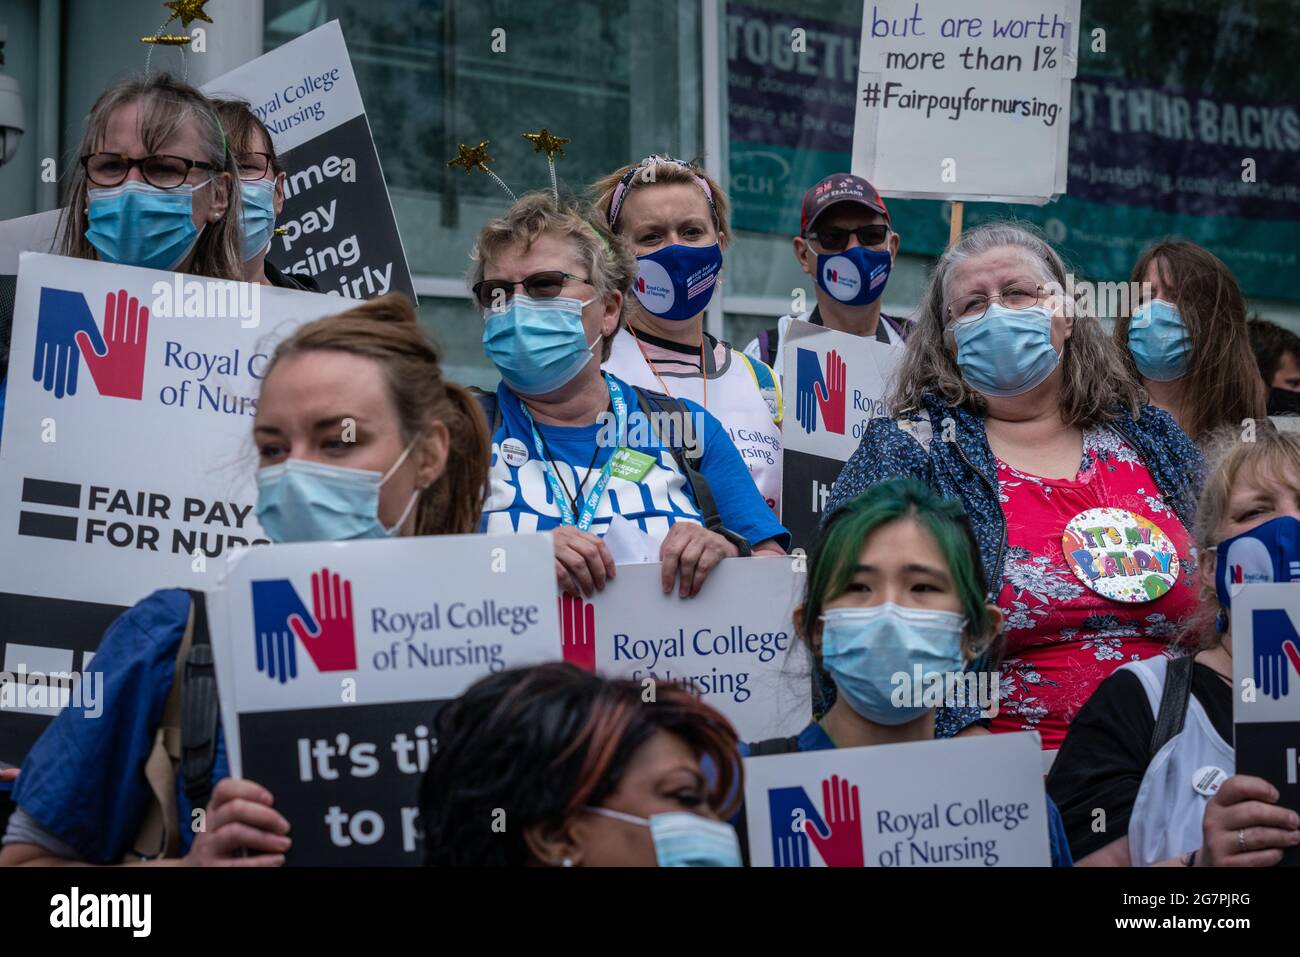 "Les travailleurs du NHS disent non aux inégalités de rémunération dans le secteur public". Les infirmières et les autres travailleurs du NHS se rassemblent pour se protéger contre les inégalités salariales. Londres, Royaume-Uni Banque D'Images